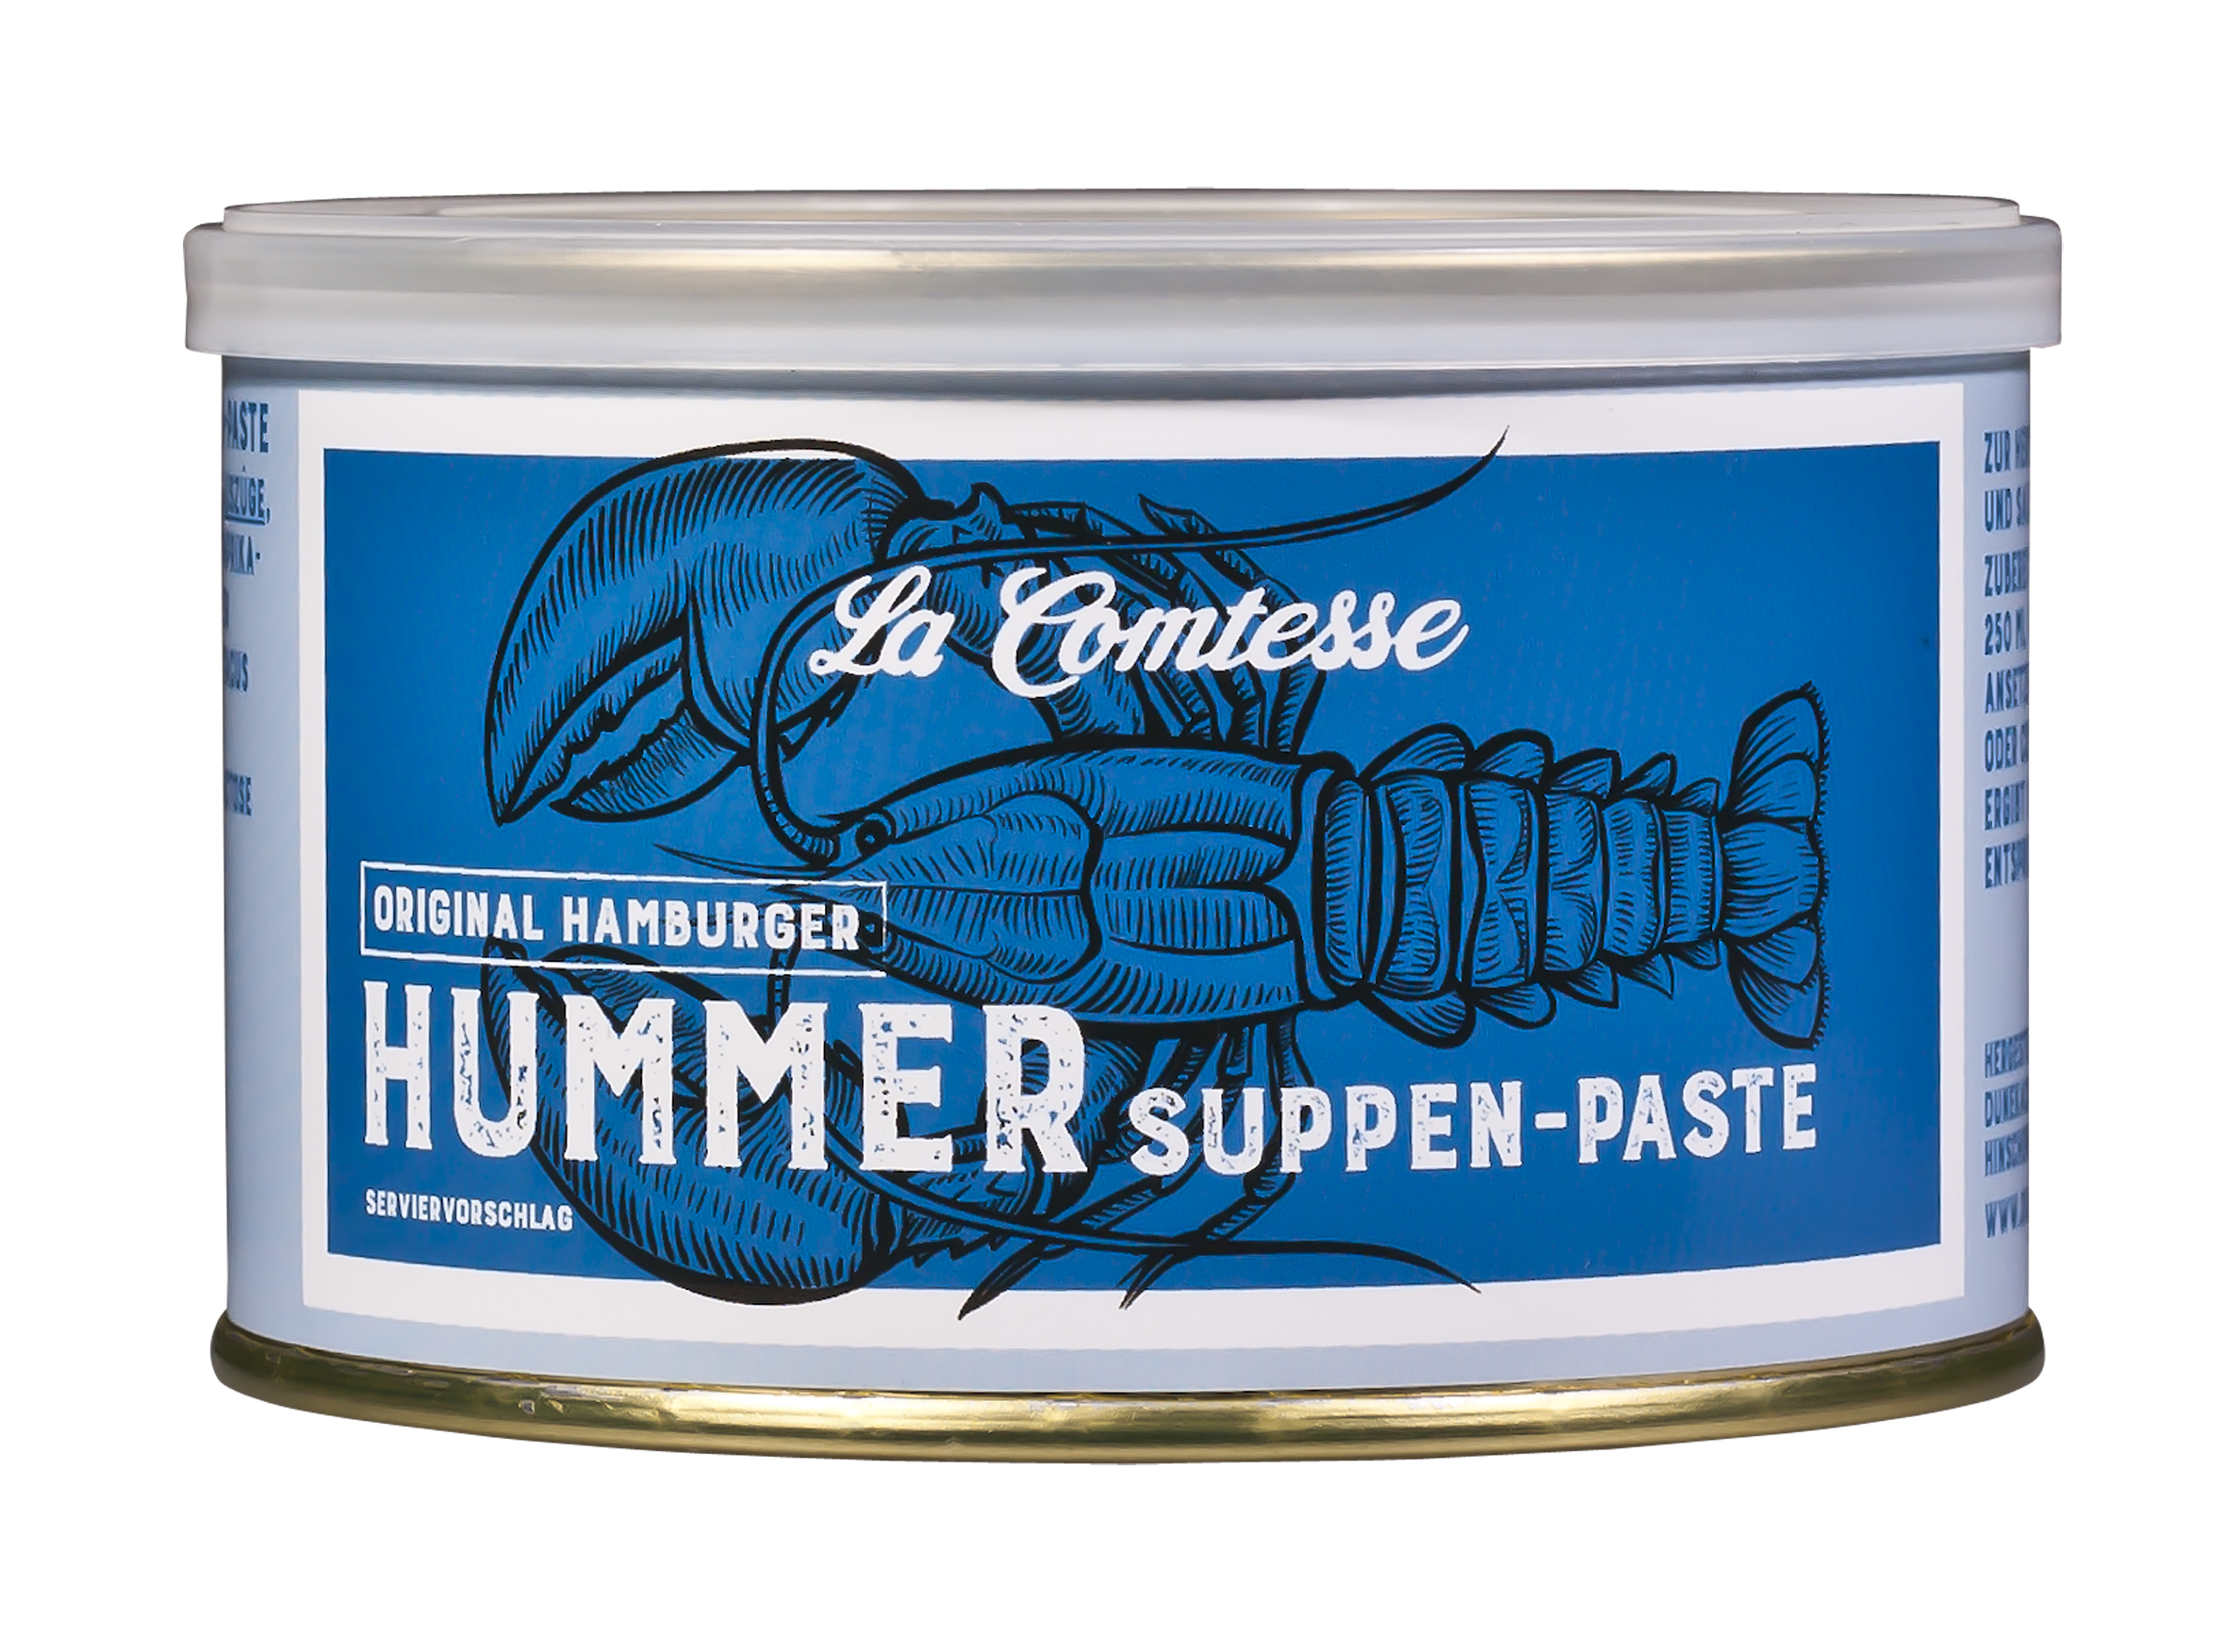 Hummer-Suppen-Paste, 450 g